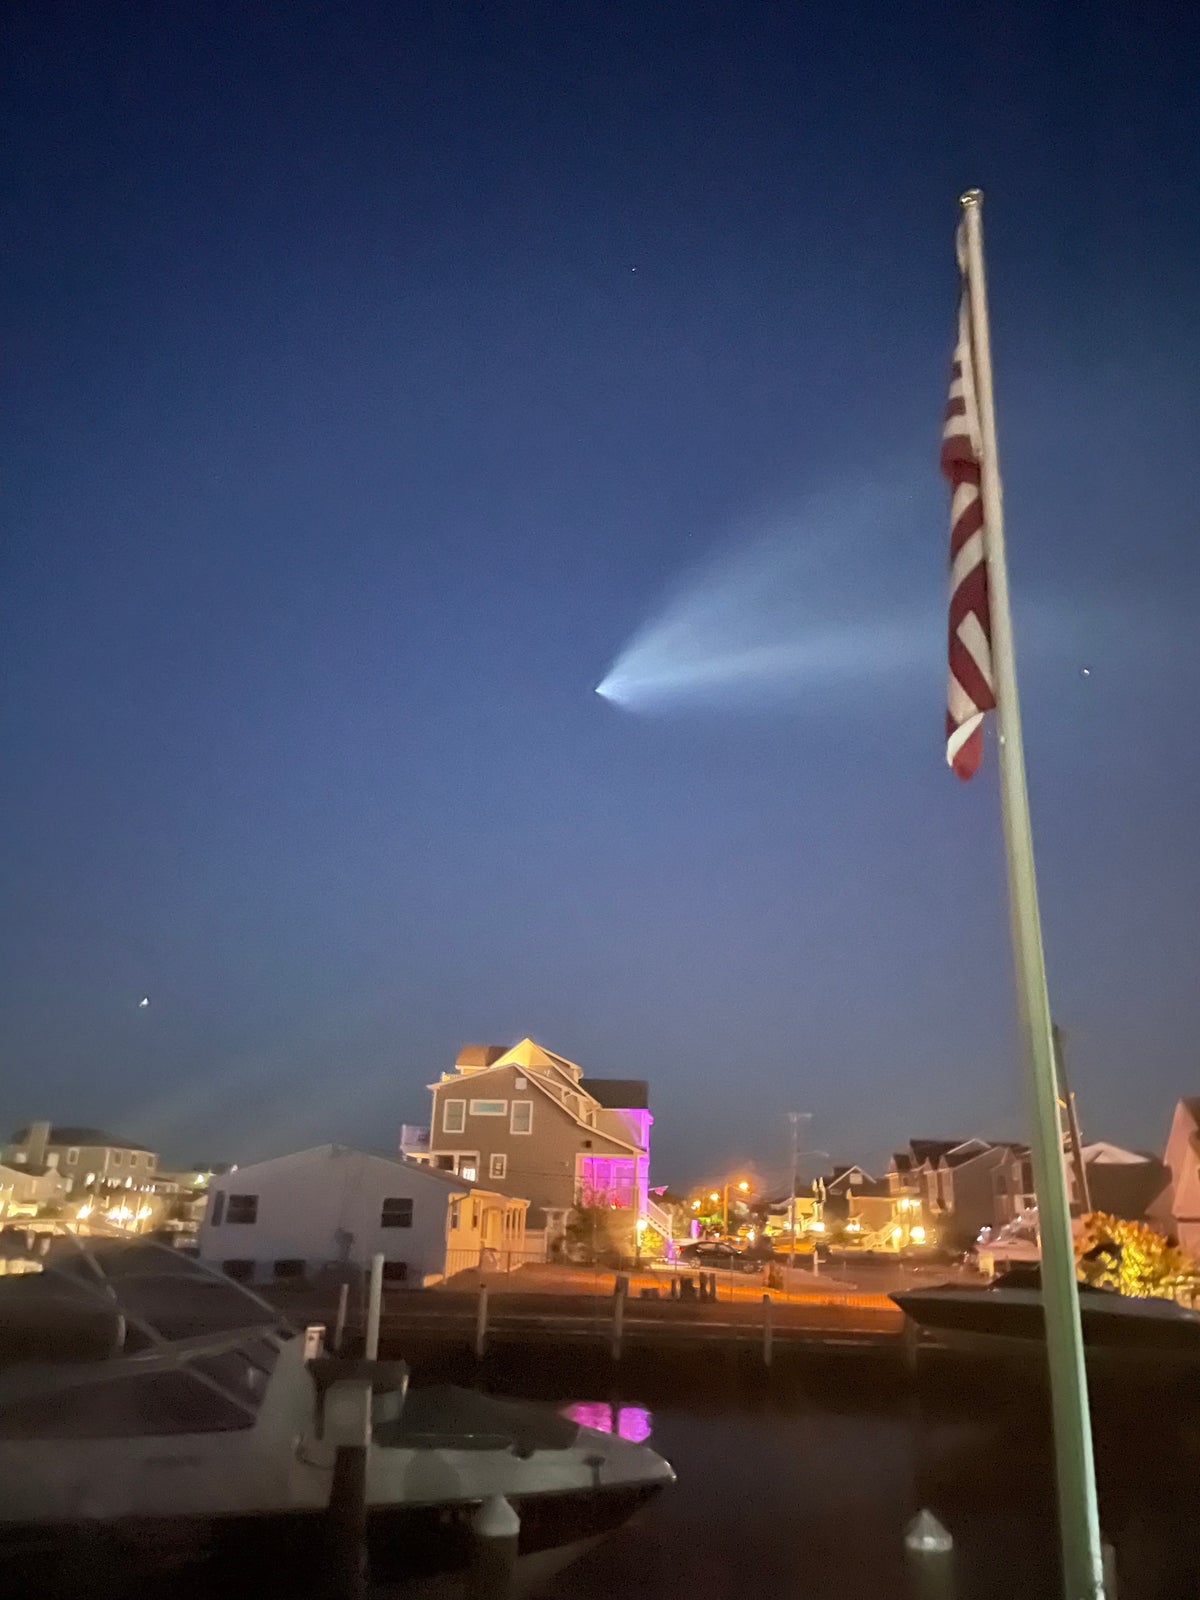 El rastro de vapor del cohete Space X Falcon 9 visto a través del río Toms.  Foto cortesía del espectador de News 12, el esposo de Michele Arocha, espectador de Nueva Jersey.